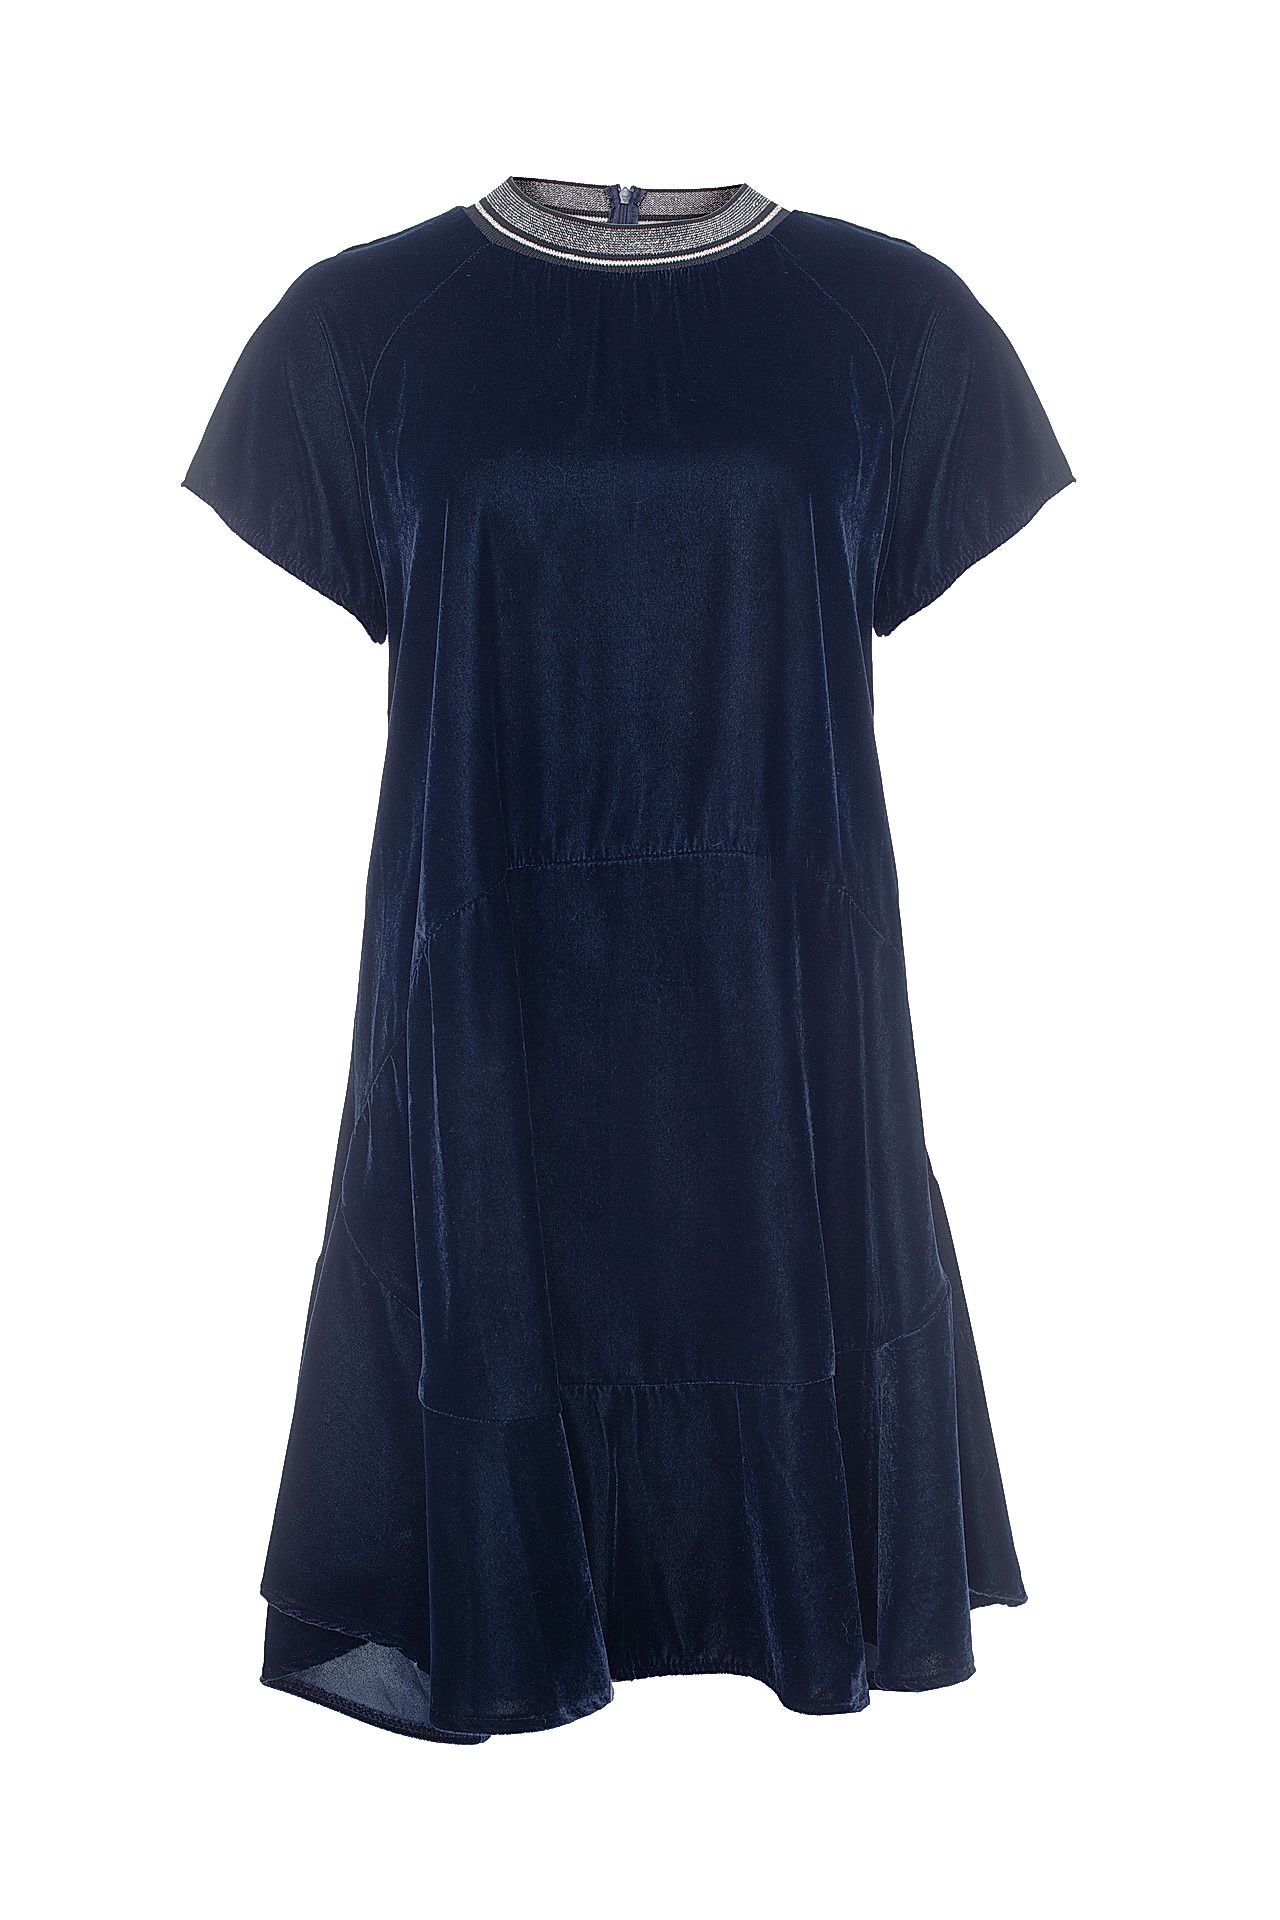 Одежда женская Платье IMPERIAL (ASN5S9K/17.2). Купить за 5950 руб.